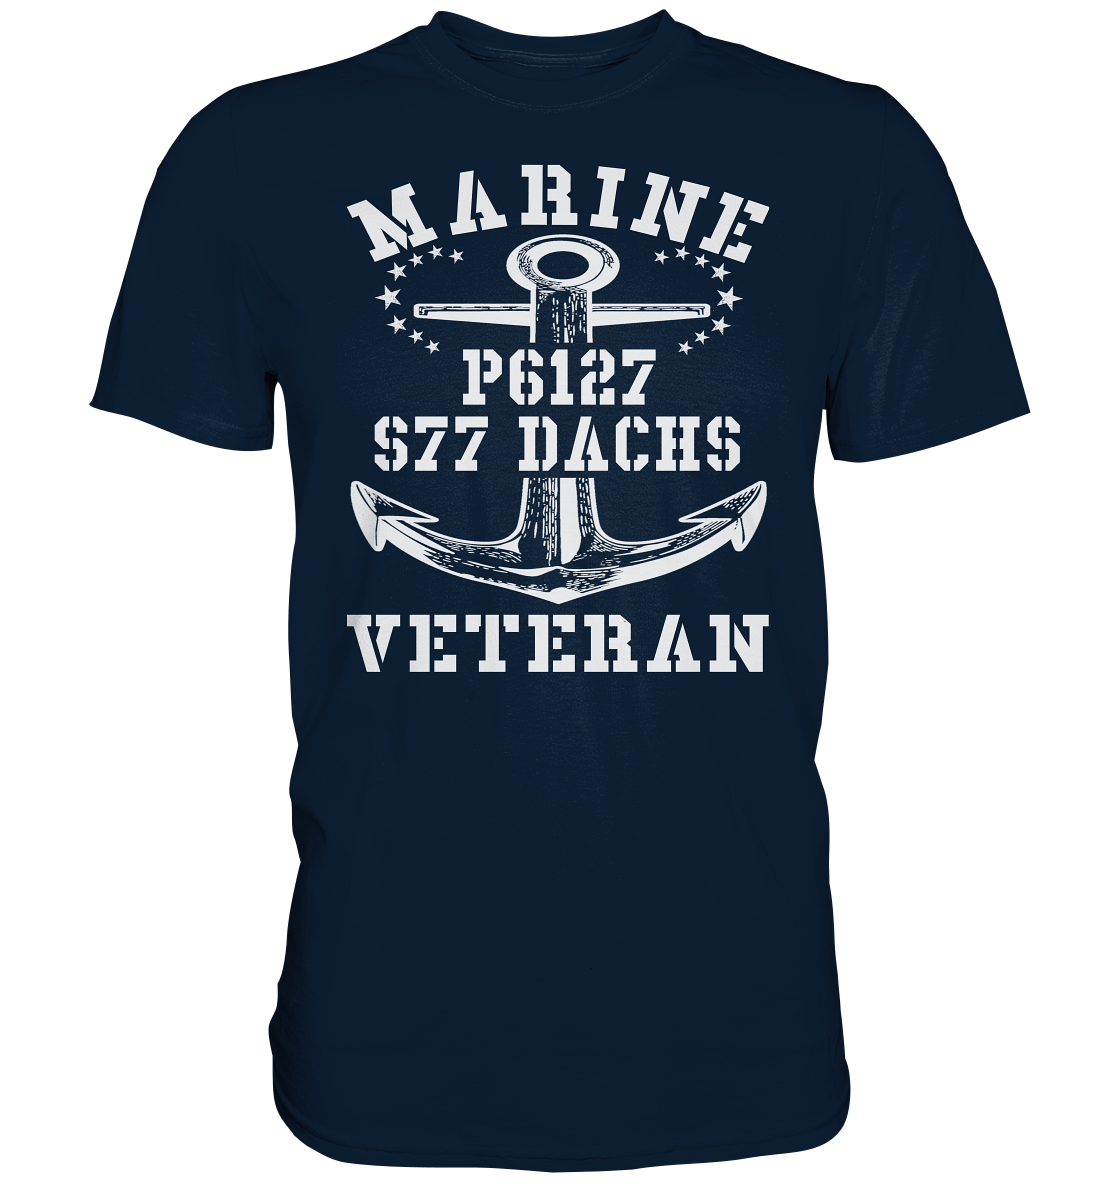 FK-Schnellboot P6127 DACHS Marine Veteran - Premium Shirt